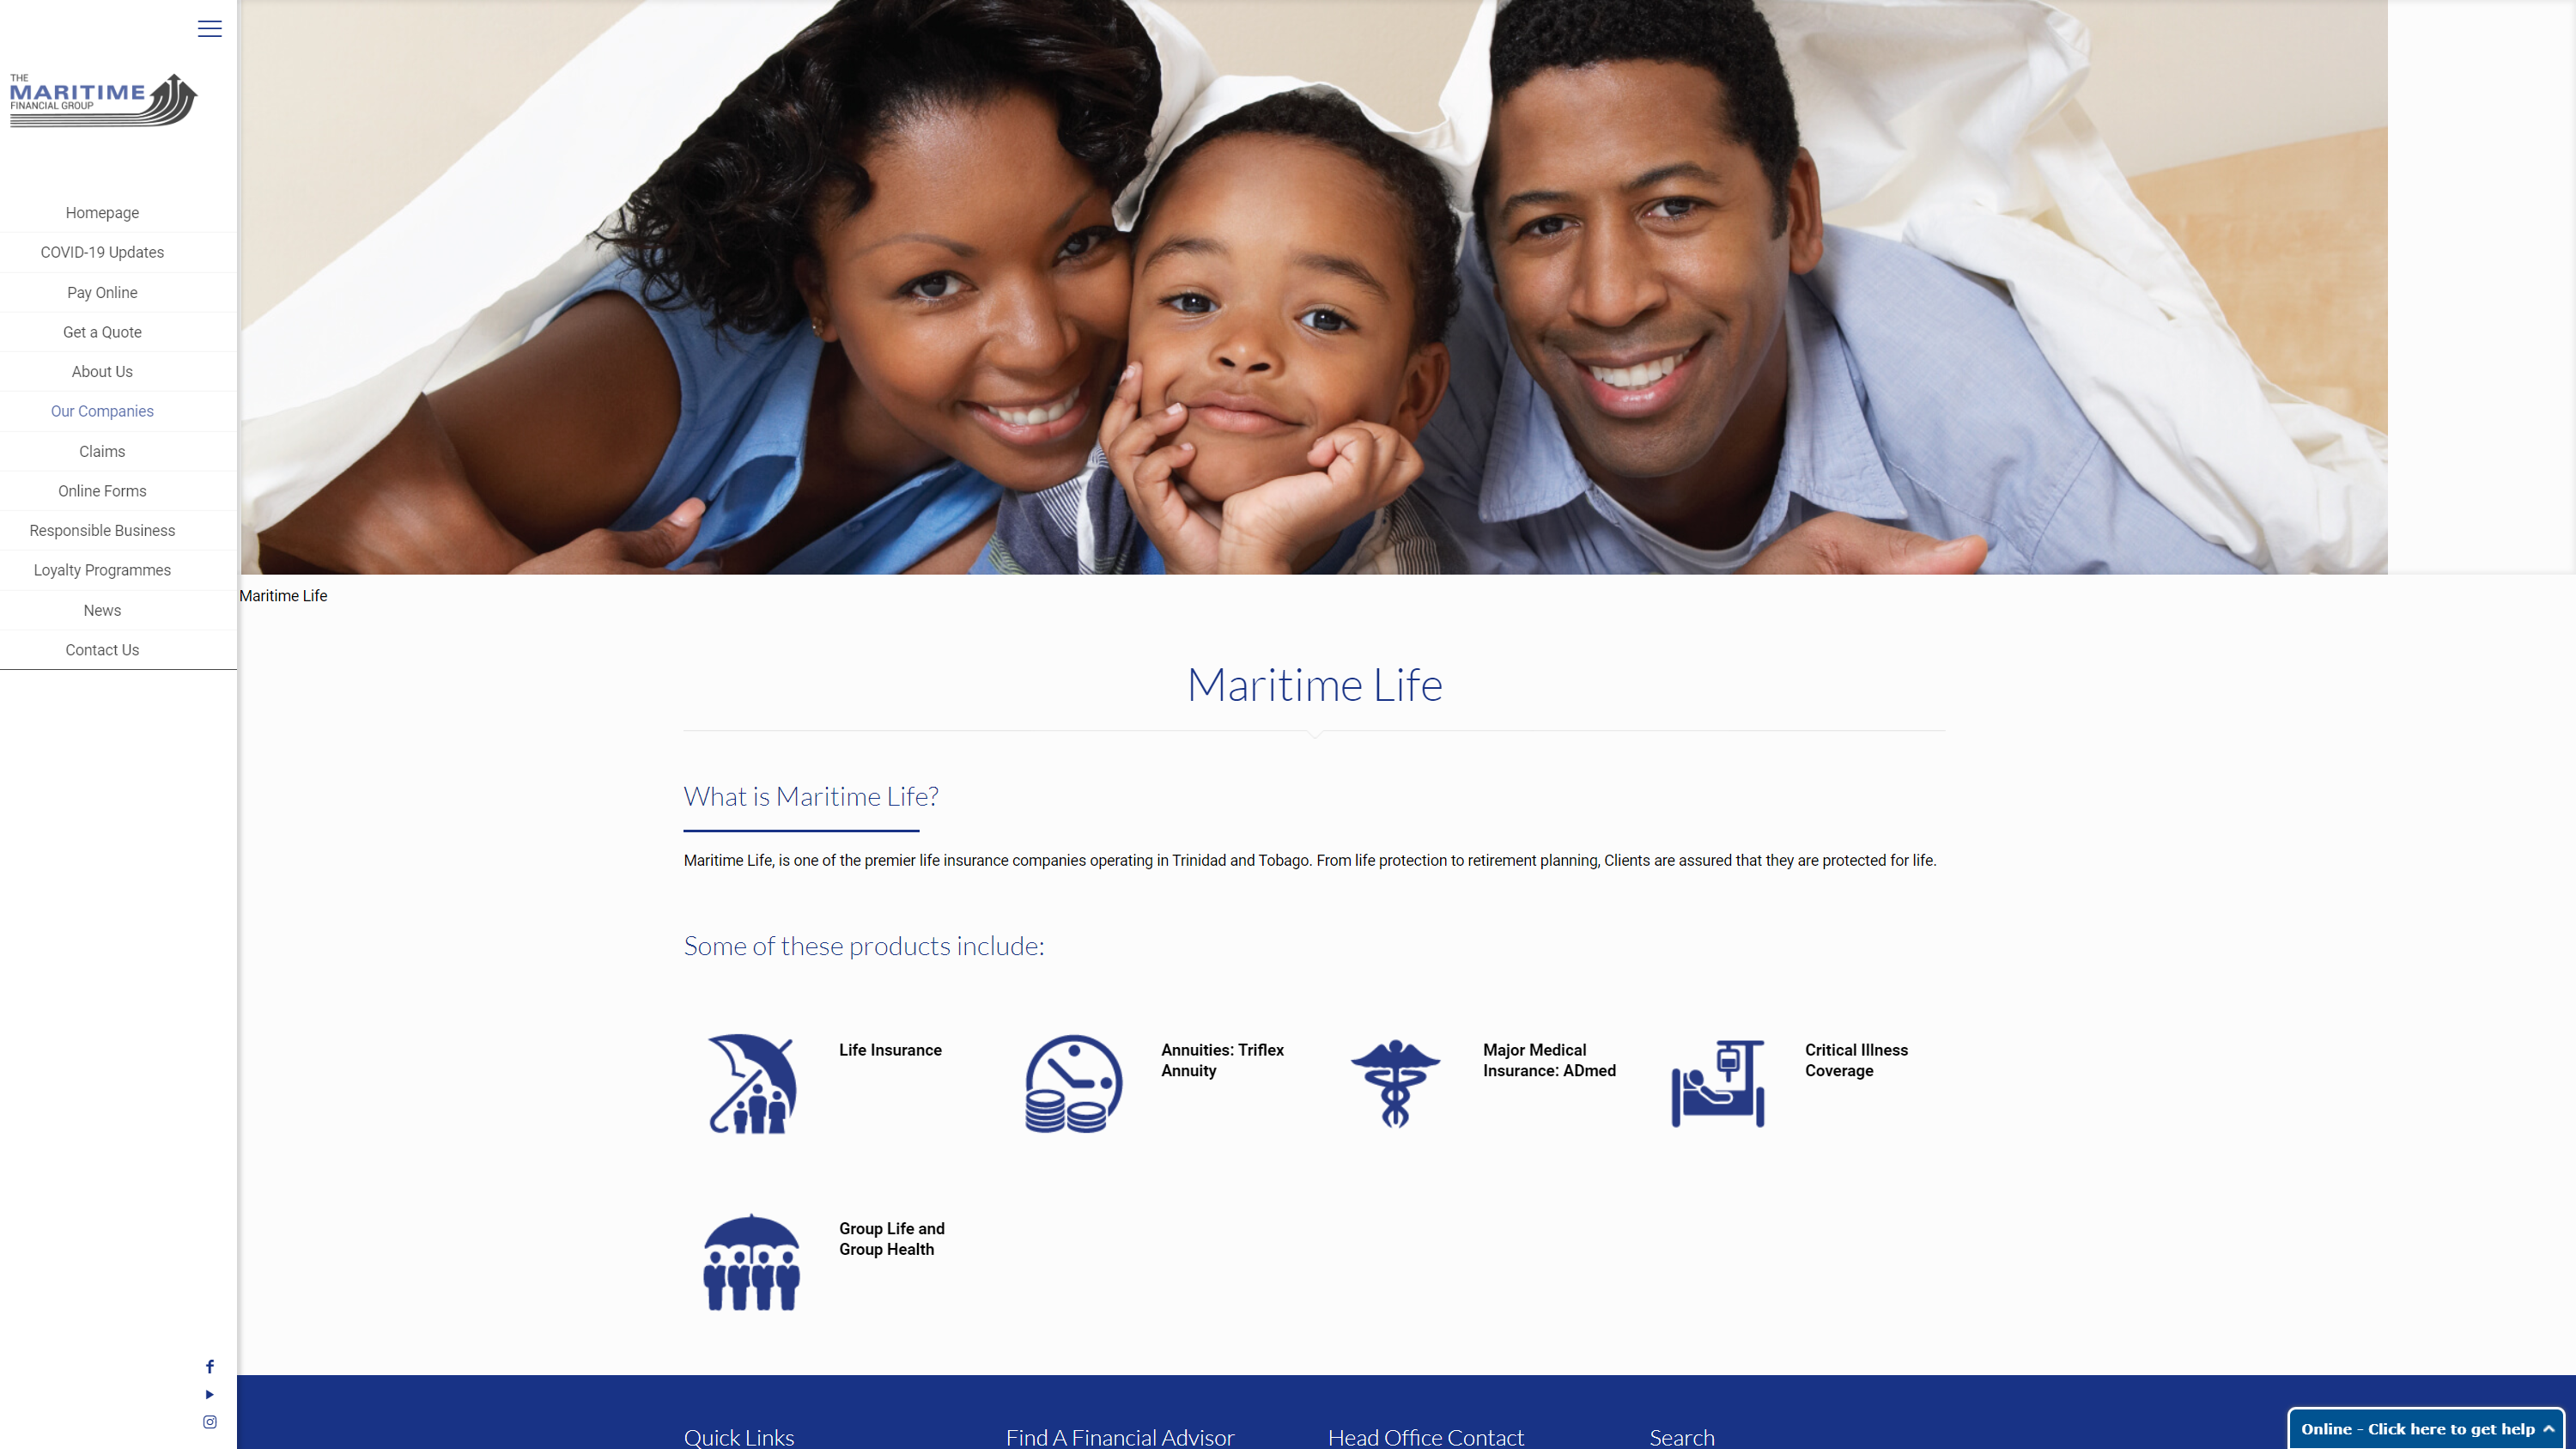 maritimefinancial.com_divisions_maritime-life_(new)